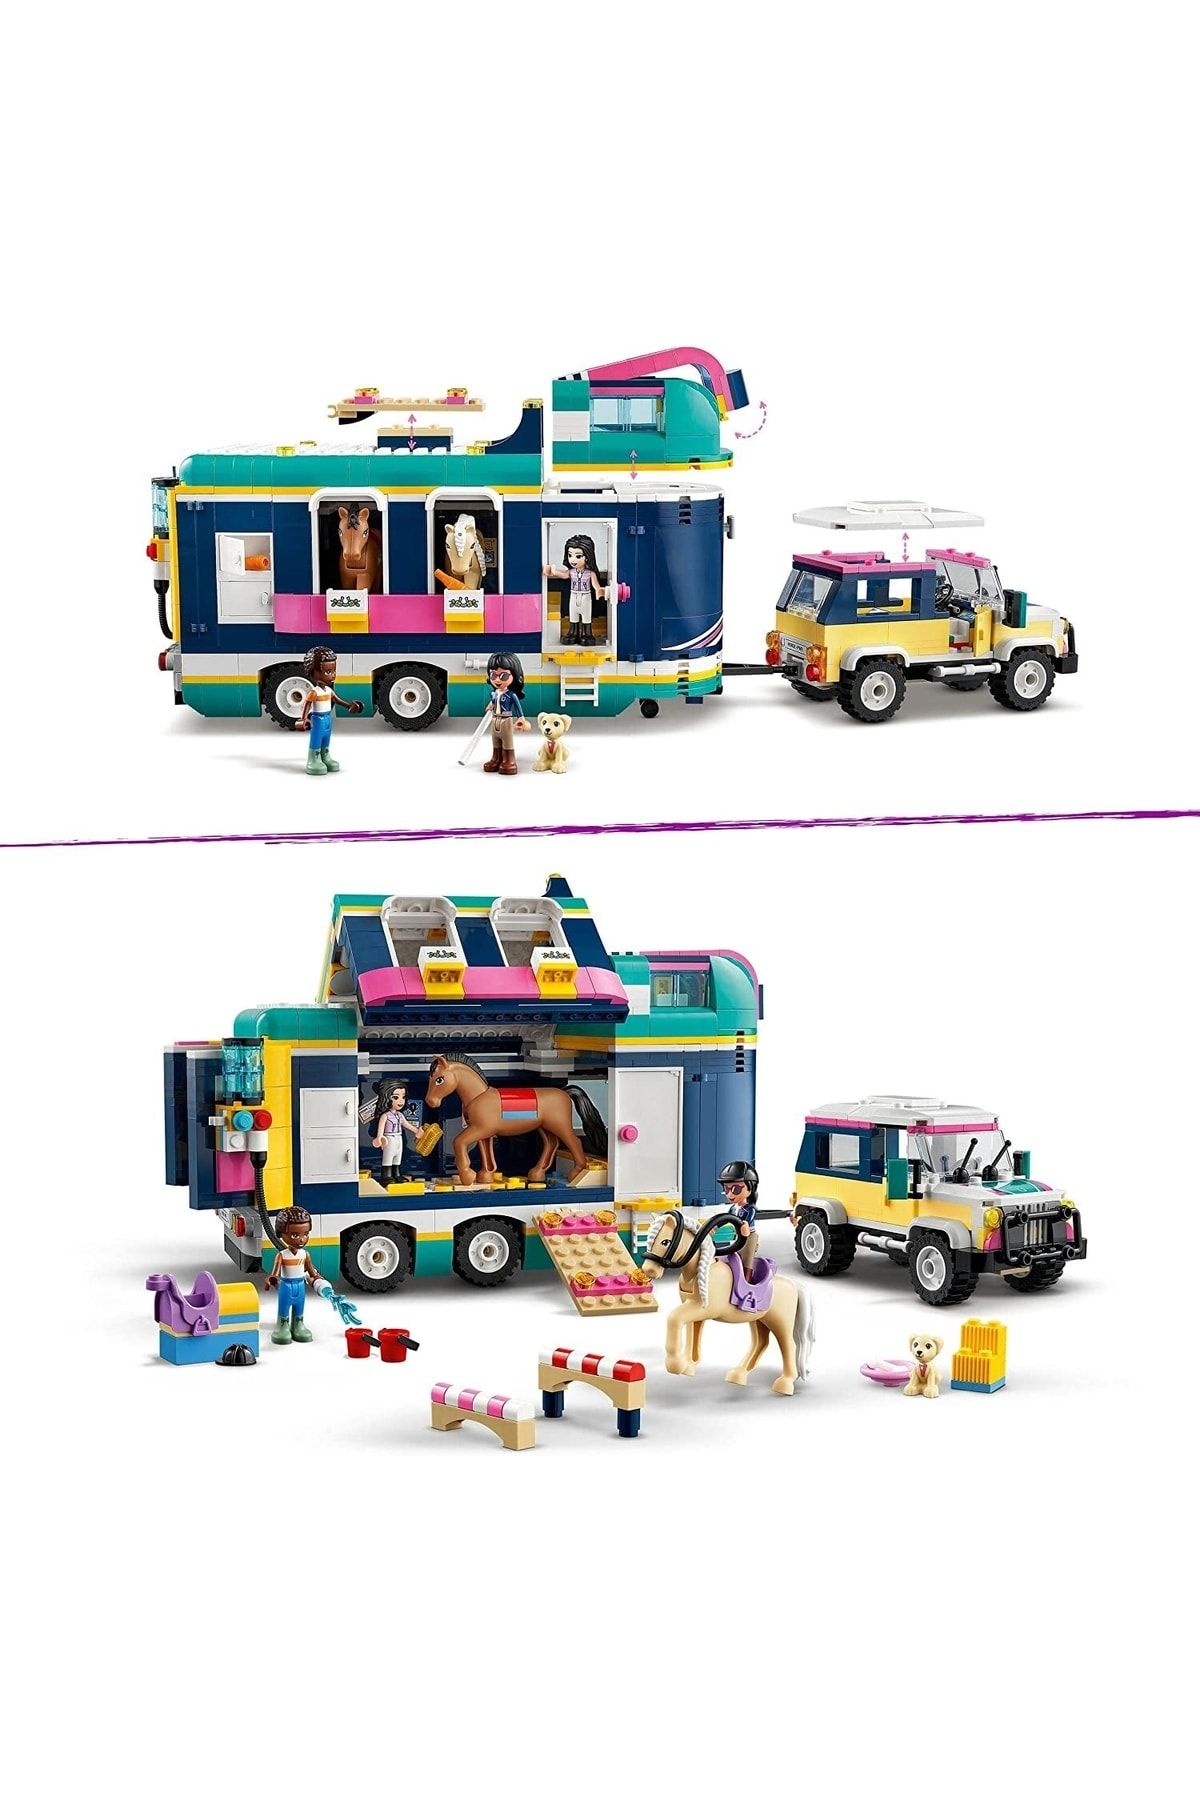 LEGO لگو تریلر نمایش اسب دوستان 41722 سواری با تجهیزات اسب سواری برای کودکان 8 سال به بالا